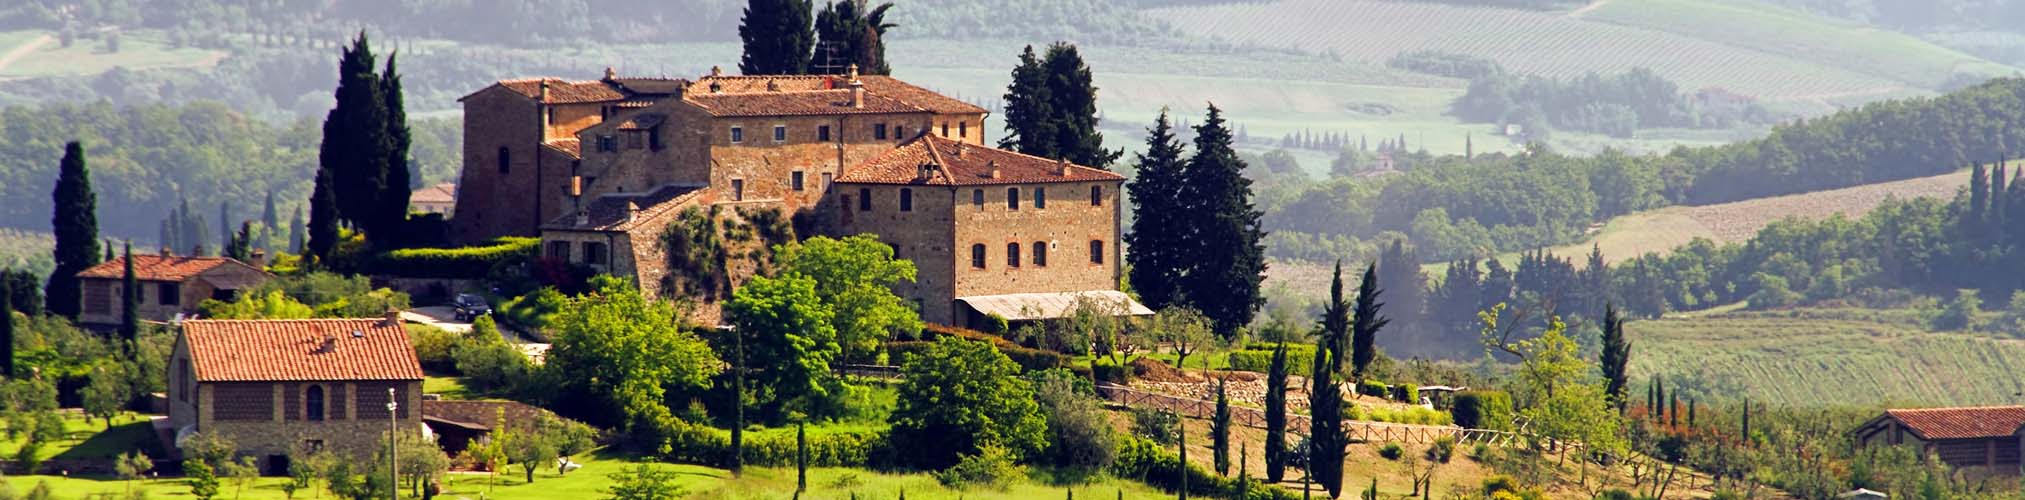 Ház egy szőlőültetvényen Toszkánában, Olaszországban